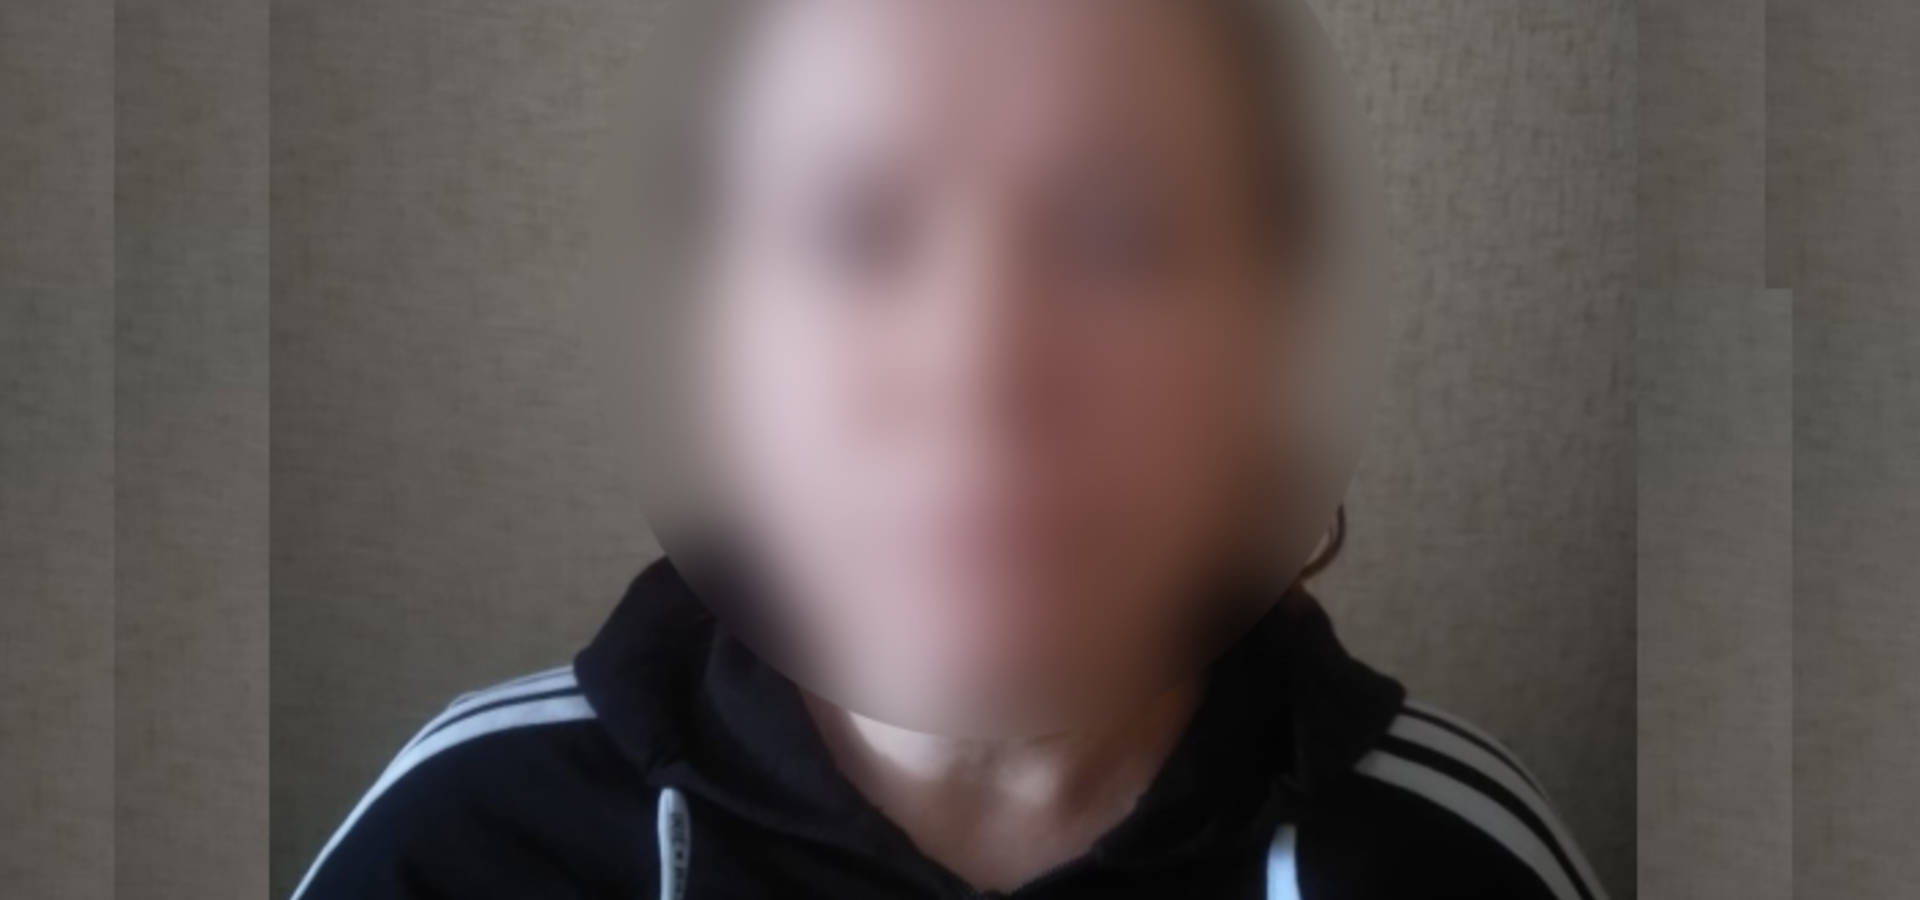 У Хмільницькому районі поліція затримала жінку, яка до смерті побила свого знайомого